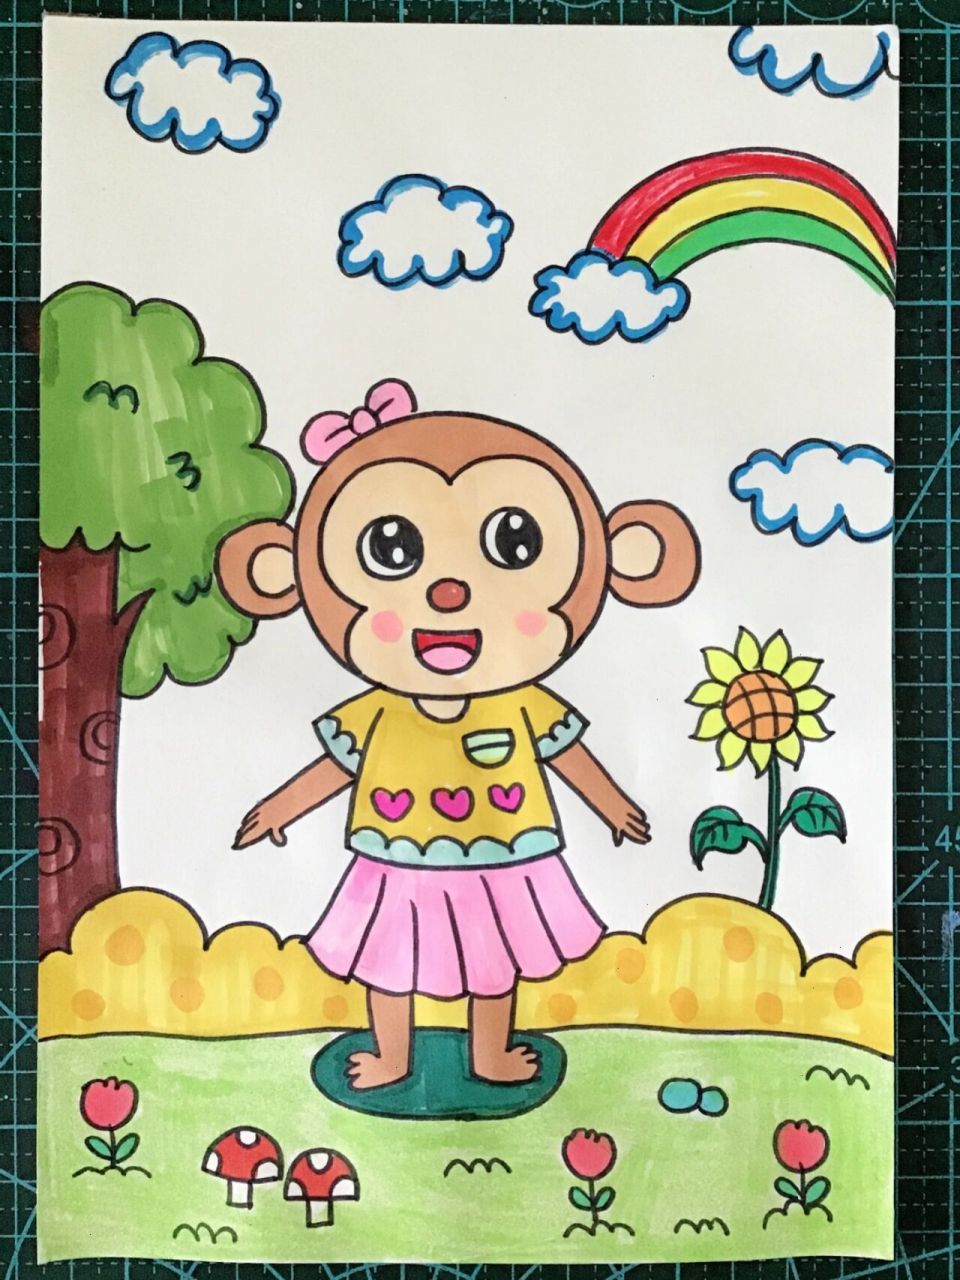 猴的简笔画彩色图片